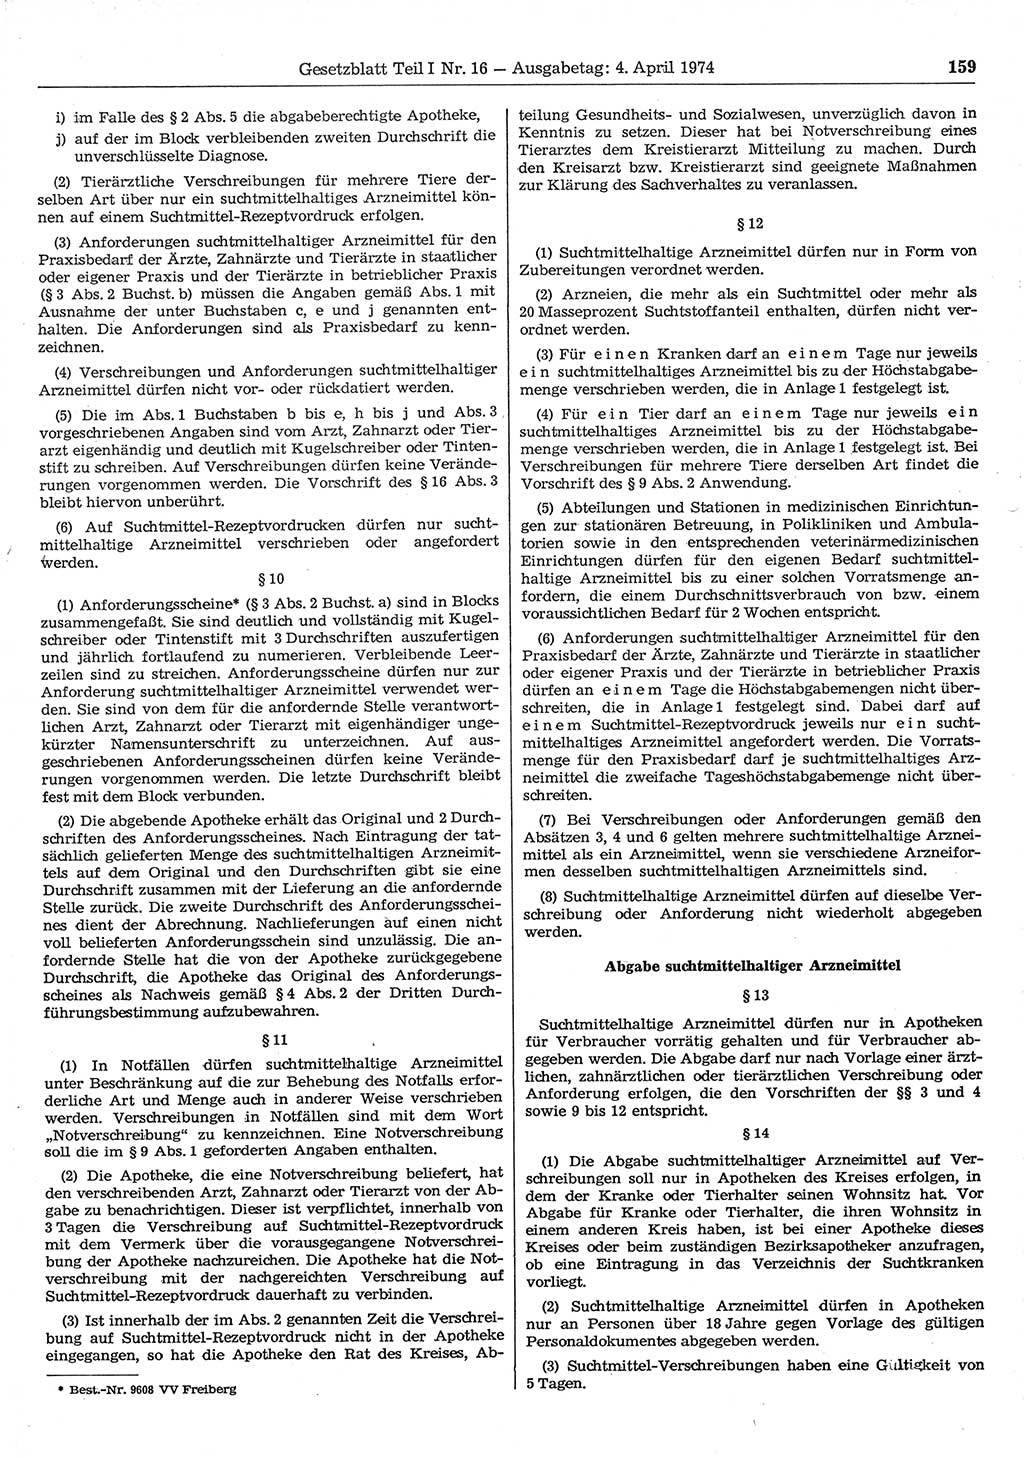 Gesetzblatt (GBl.) der Deutschen Demokratischen Republik (DDR) Teil Ⅰ 1974, Seite 159 (GBl. DDR Ⅰ 1974, S. 159)